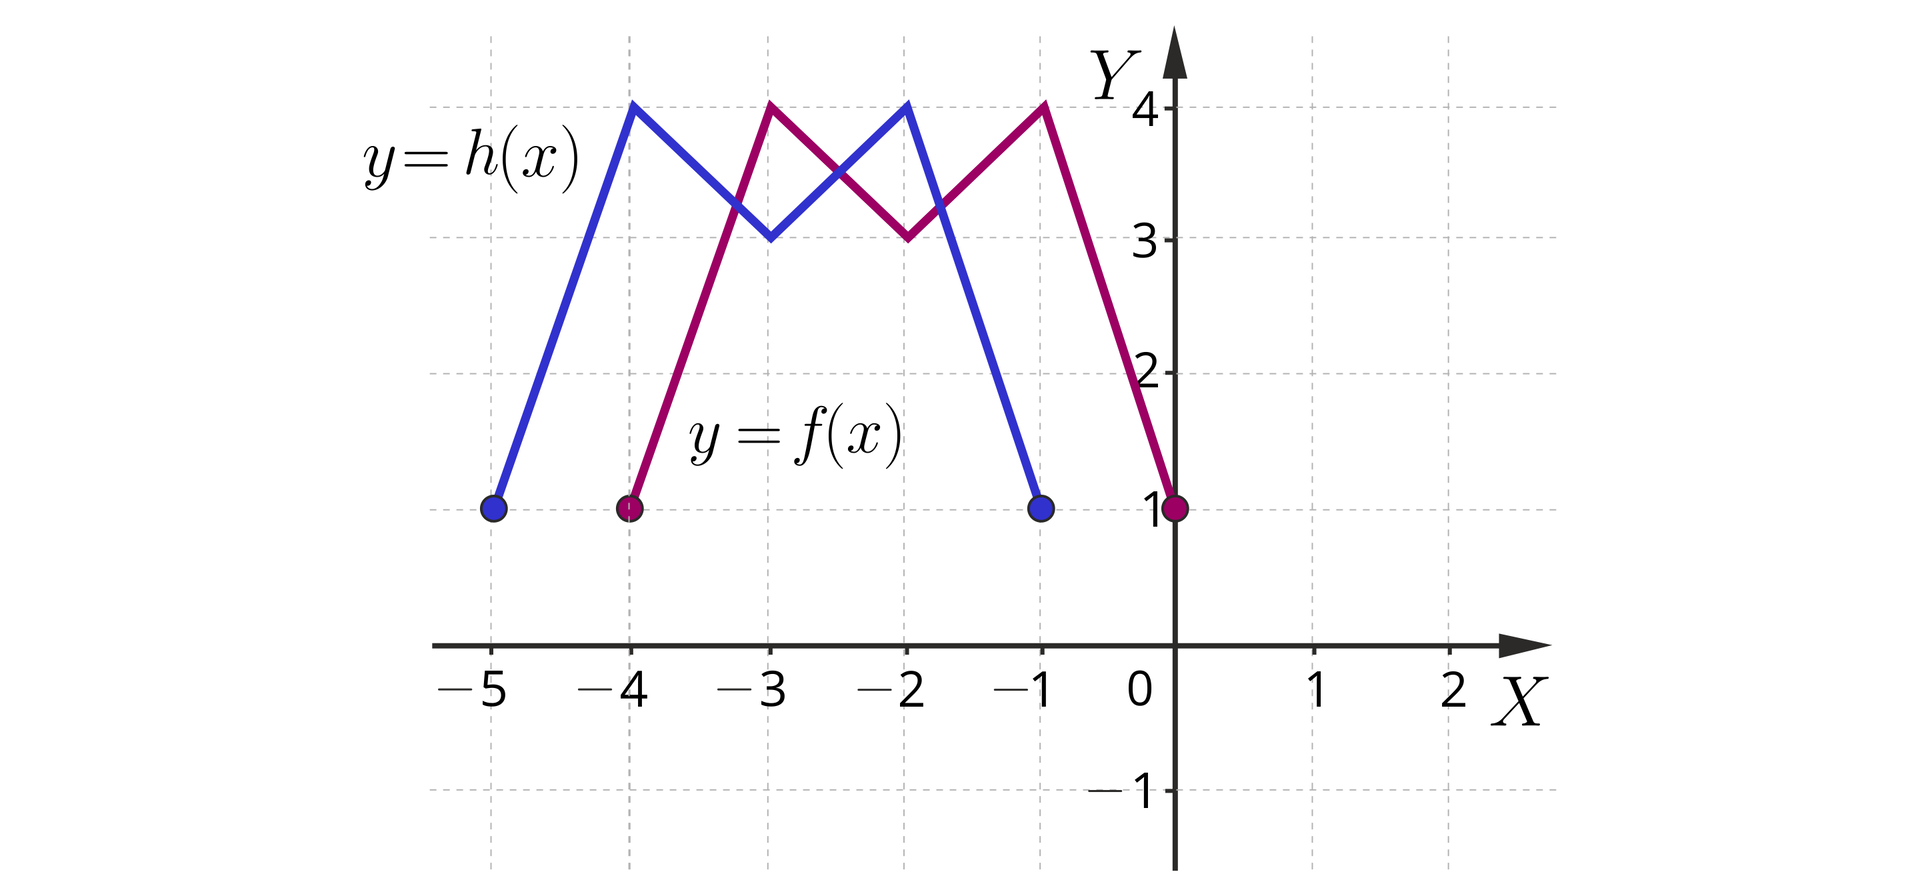 Ilustracja przedstawia układ współrzędnych z poziomą osią x od minus 5 do 2 i pionową osią y od minus 1 do cztery. W układzie zaznaczono dwa wykresy o tym samym kształcie. Pierwszy z nich oznaczony y=fx rozpoczyna się w zamalowanym punkcie o współrzędnych nawias minus cztery średnik jeden zamknięcie nawiasu, dalej biegnie ukośnie do punktu nawias minus trzy średnik cztery zamknięcie nawiasu, stąd biegnie ukośnie do punktu nawias minus dwa średnik trzy zamknięcie nawiasu, skąd biegnie ukośnie do punktu nawias minus jeden  średnik cztery zamknięcie nawiasu, skąd biegnie do zamalowanego punktu nawias zero średnik jeden zamknięcie nawiasu. Drugi wykres y=hx został przesunięty w lewo. Wykres ten rozpoczyna się w zamalowanym punkcie nawias minus pięć średnik jeden zamknięcie nawiasu, dalej biegnie ukośnie do punktu nawias minus cztery średnik cztery zamknięcie nawiasu, dalej znów biegnie ukośnie do punktu nawias minus trzy średnik trzy zamknięcie nawiasu, skąd biegnie ukośnie do punktu minus dwa średnik cztery zamknięcie nawiasu, dalej biegnie  ukośnie do zamalowanego punktu nawias minus jeden średnik jeden zamknięcie nawiasu.